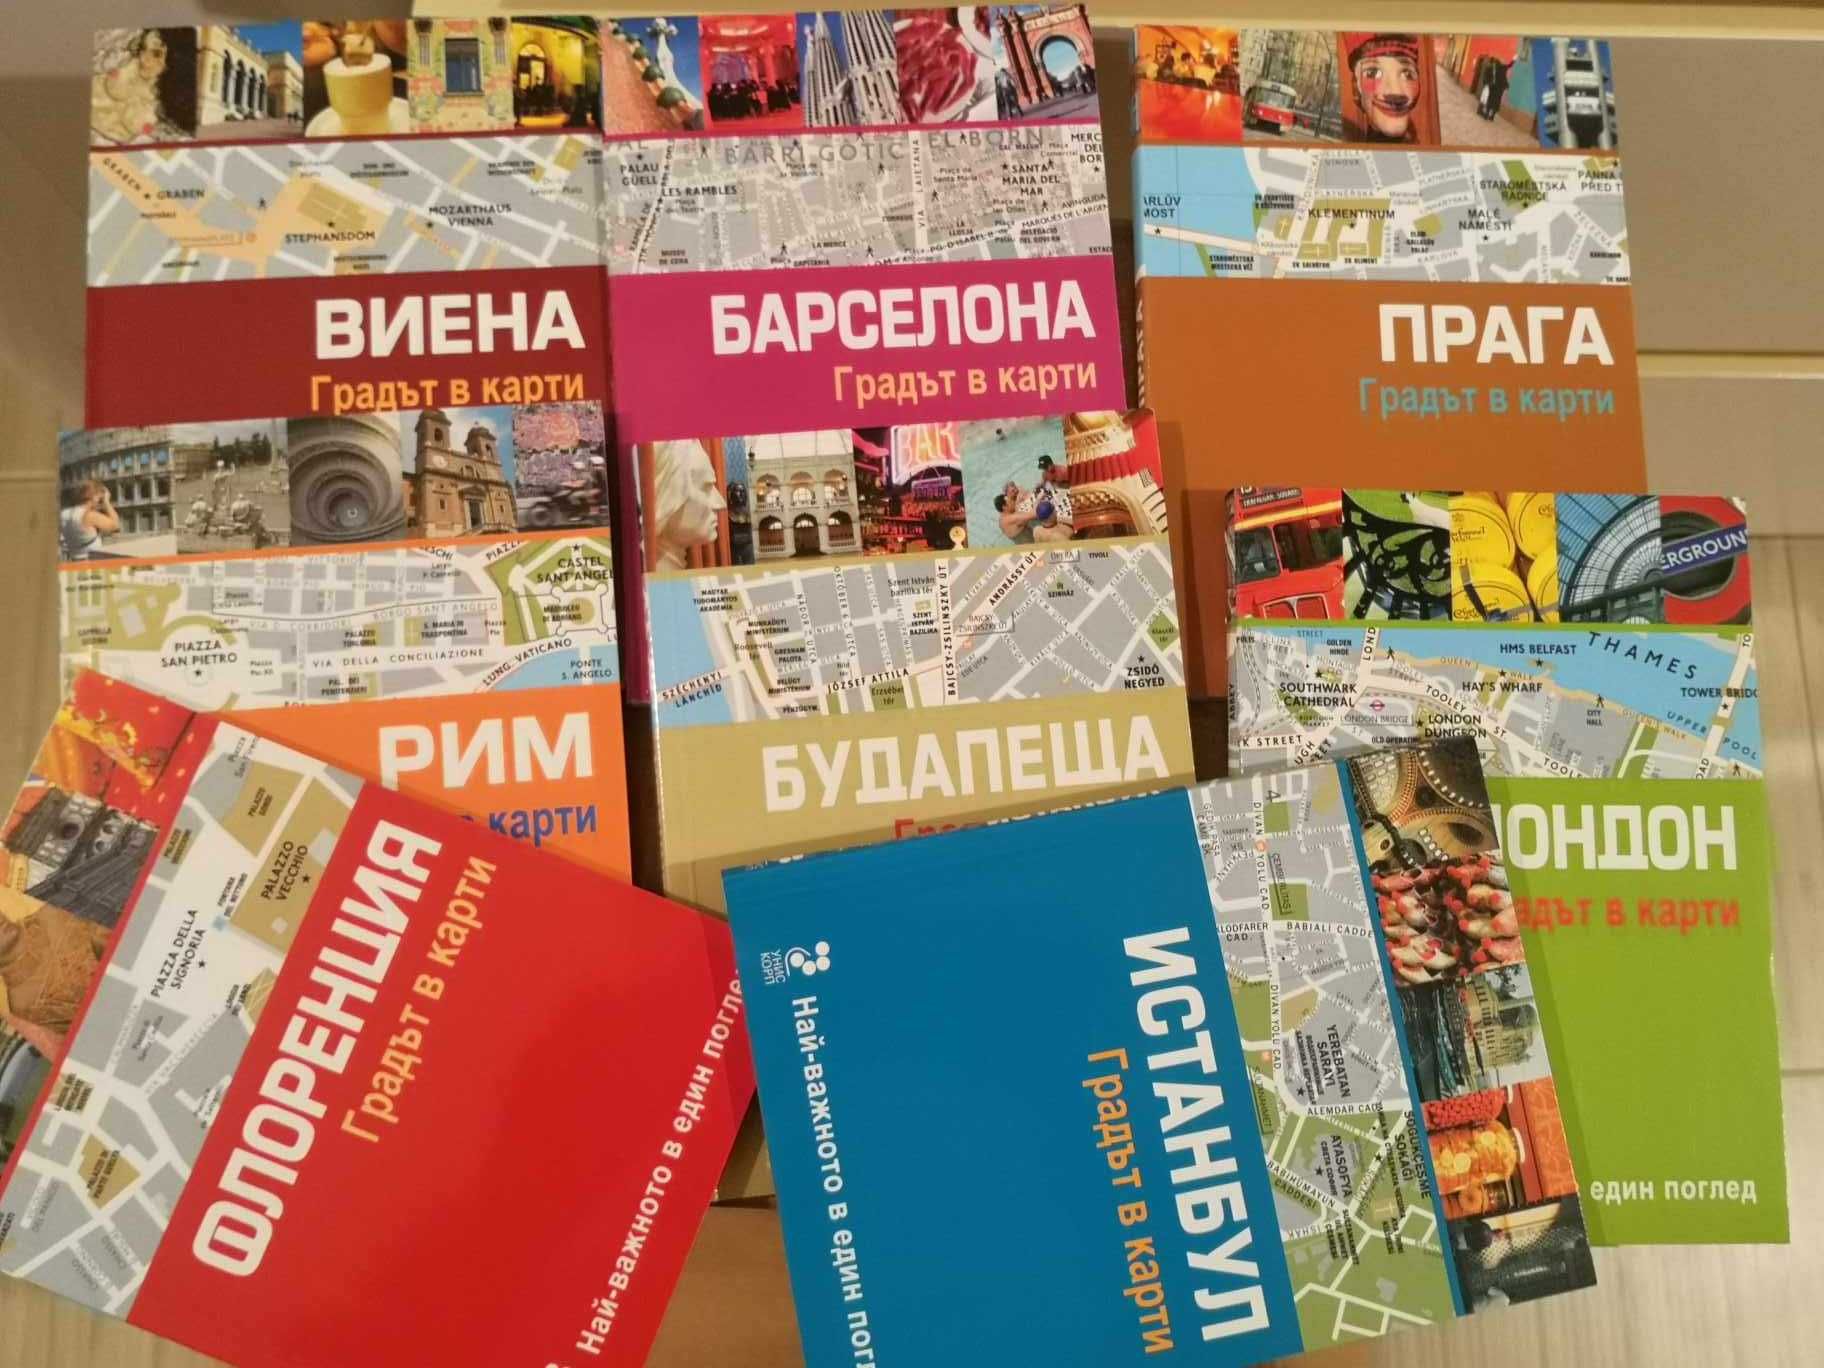 Градът в карти - книги/карти на европейски градове